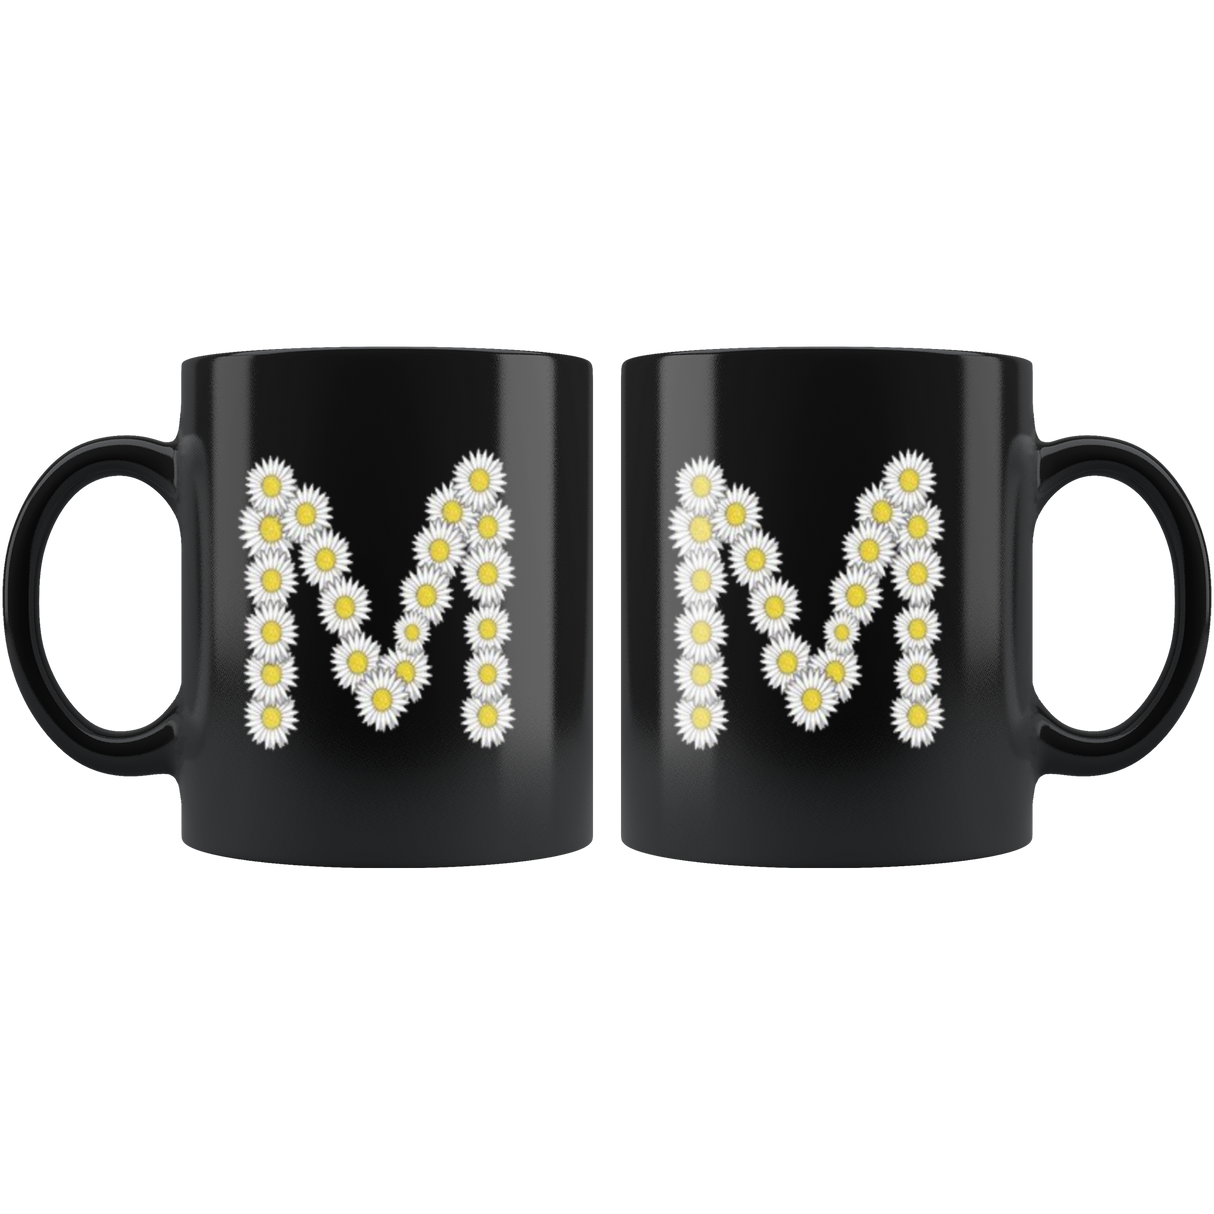 M Mugs - Shop Sassy Chick 